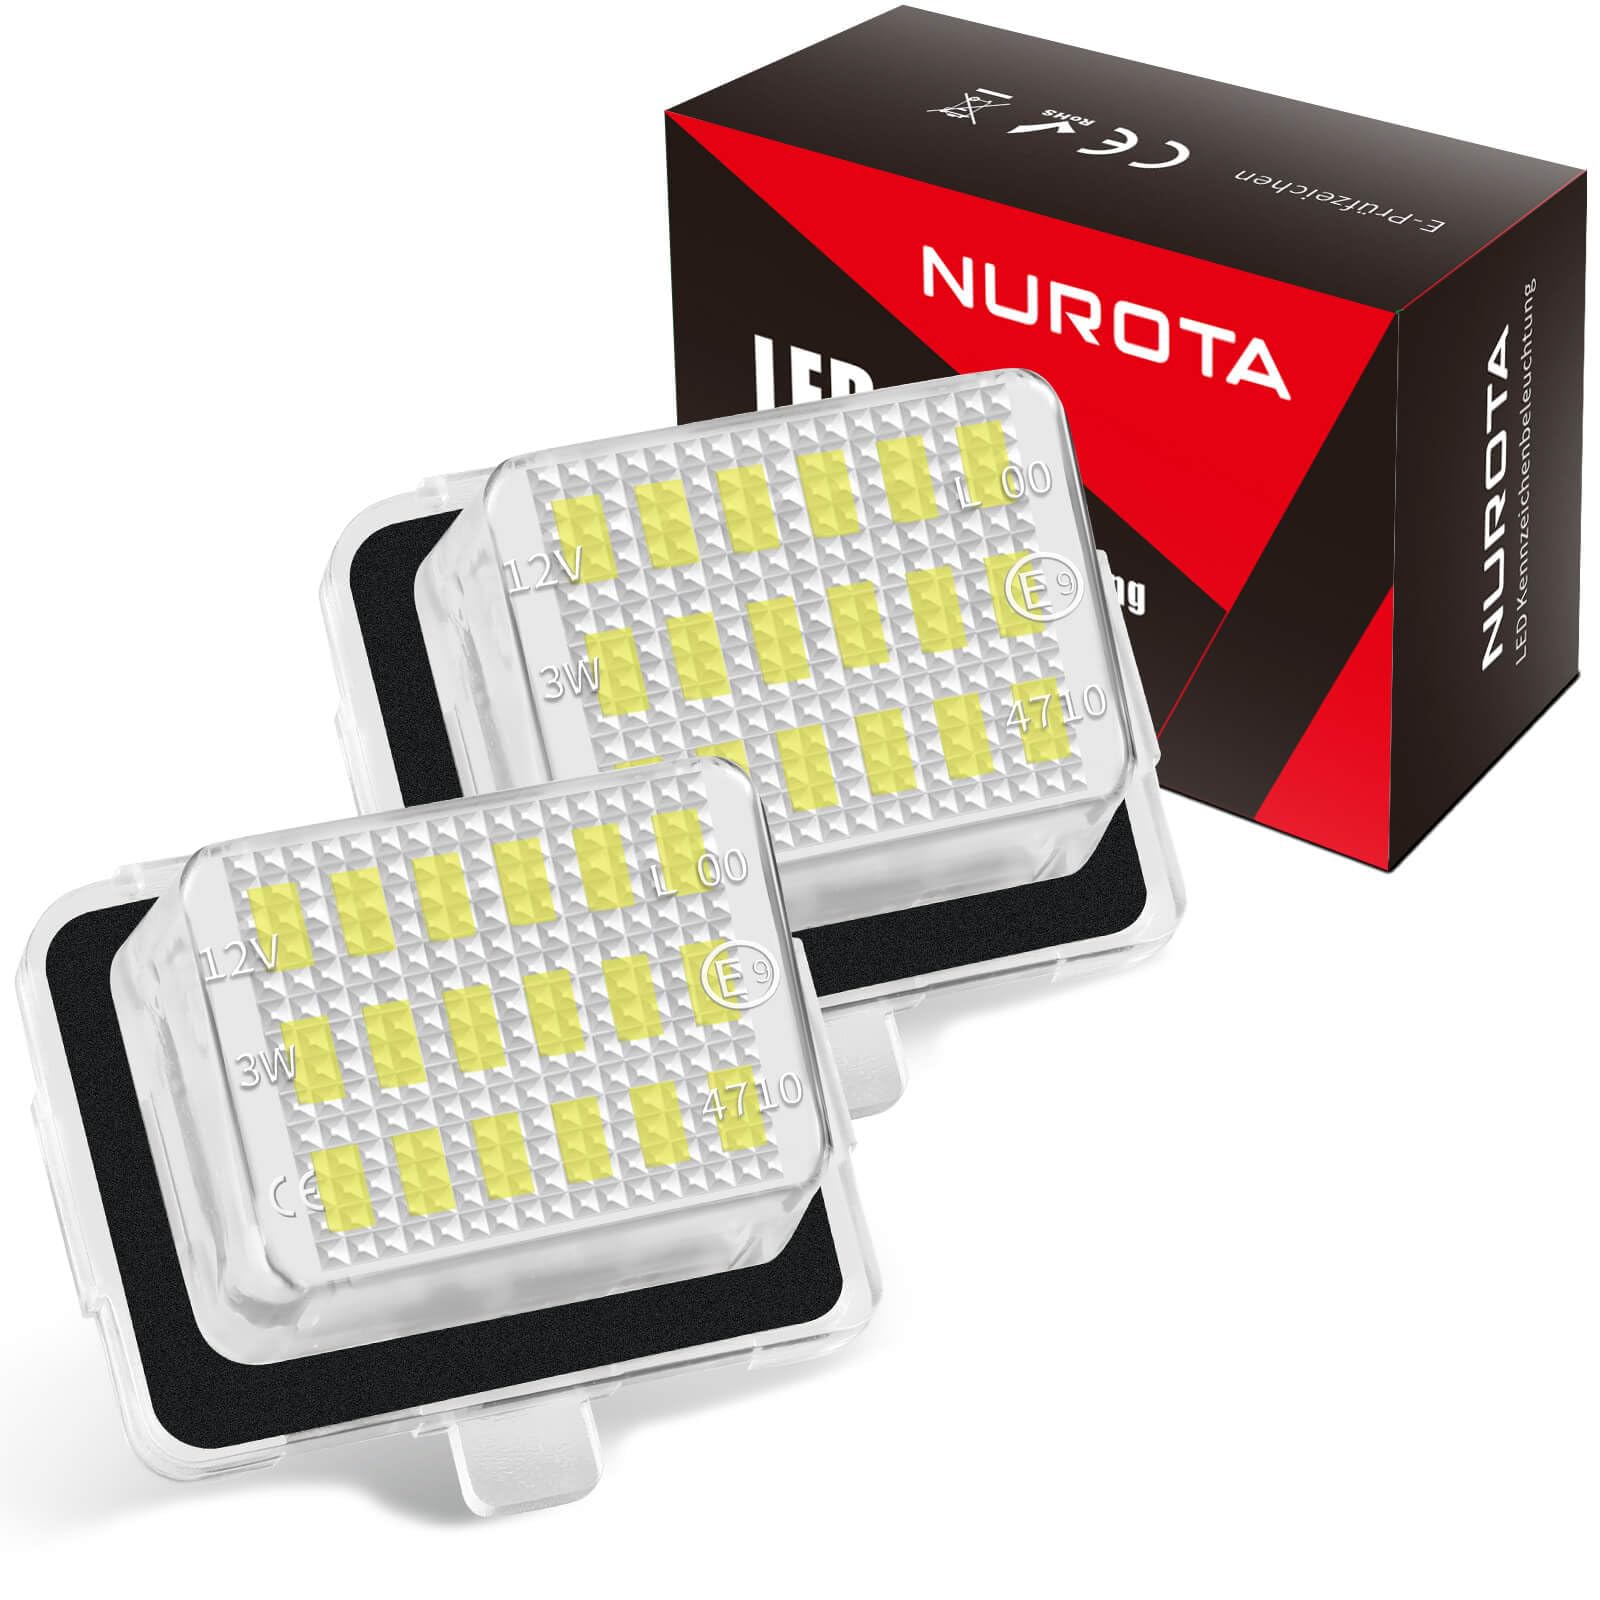 NUROTA Led Kennzeichenbeleuchtung - Canbus LED-Technologie - Wasserdicht Kennzeichenleuchte für W204, W212, W221, S204, S212, C204, C207, A207, CLA C117 von NUROTA